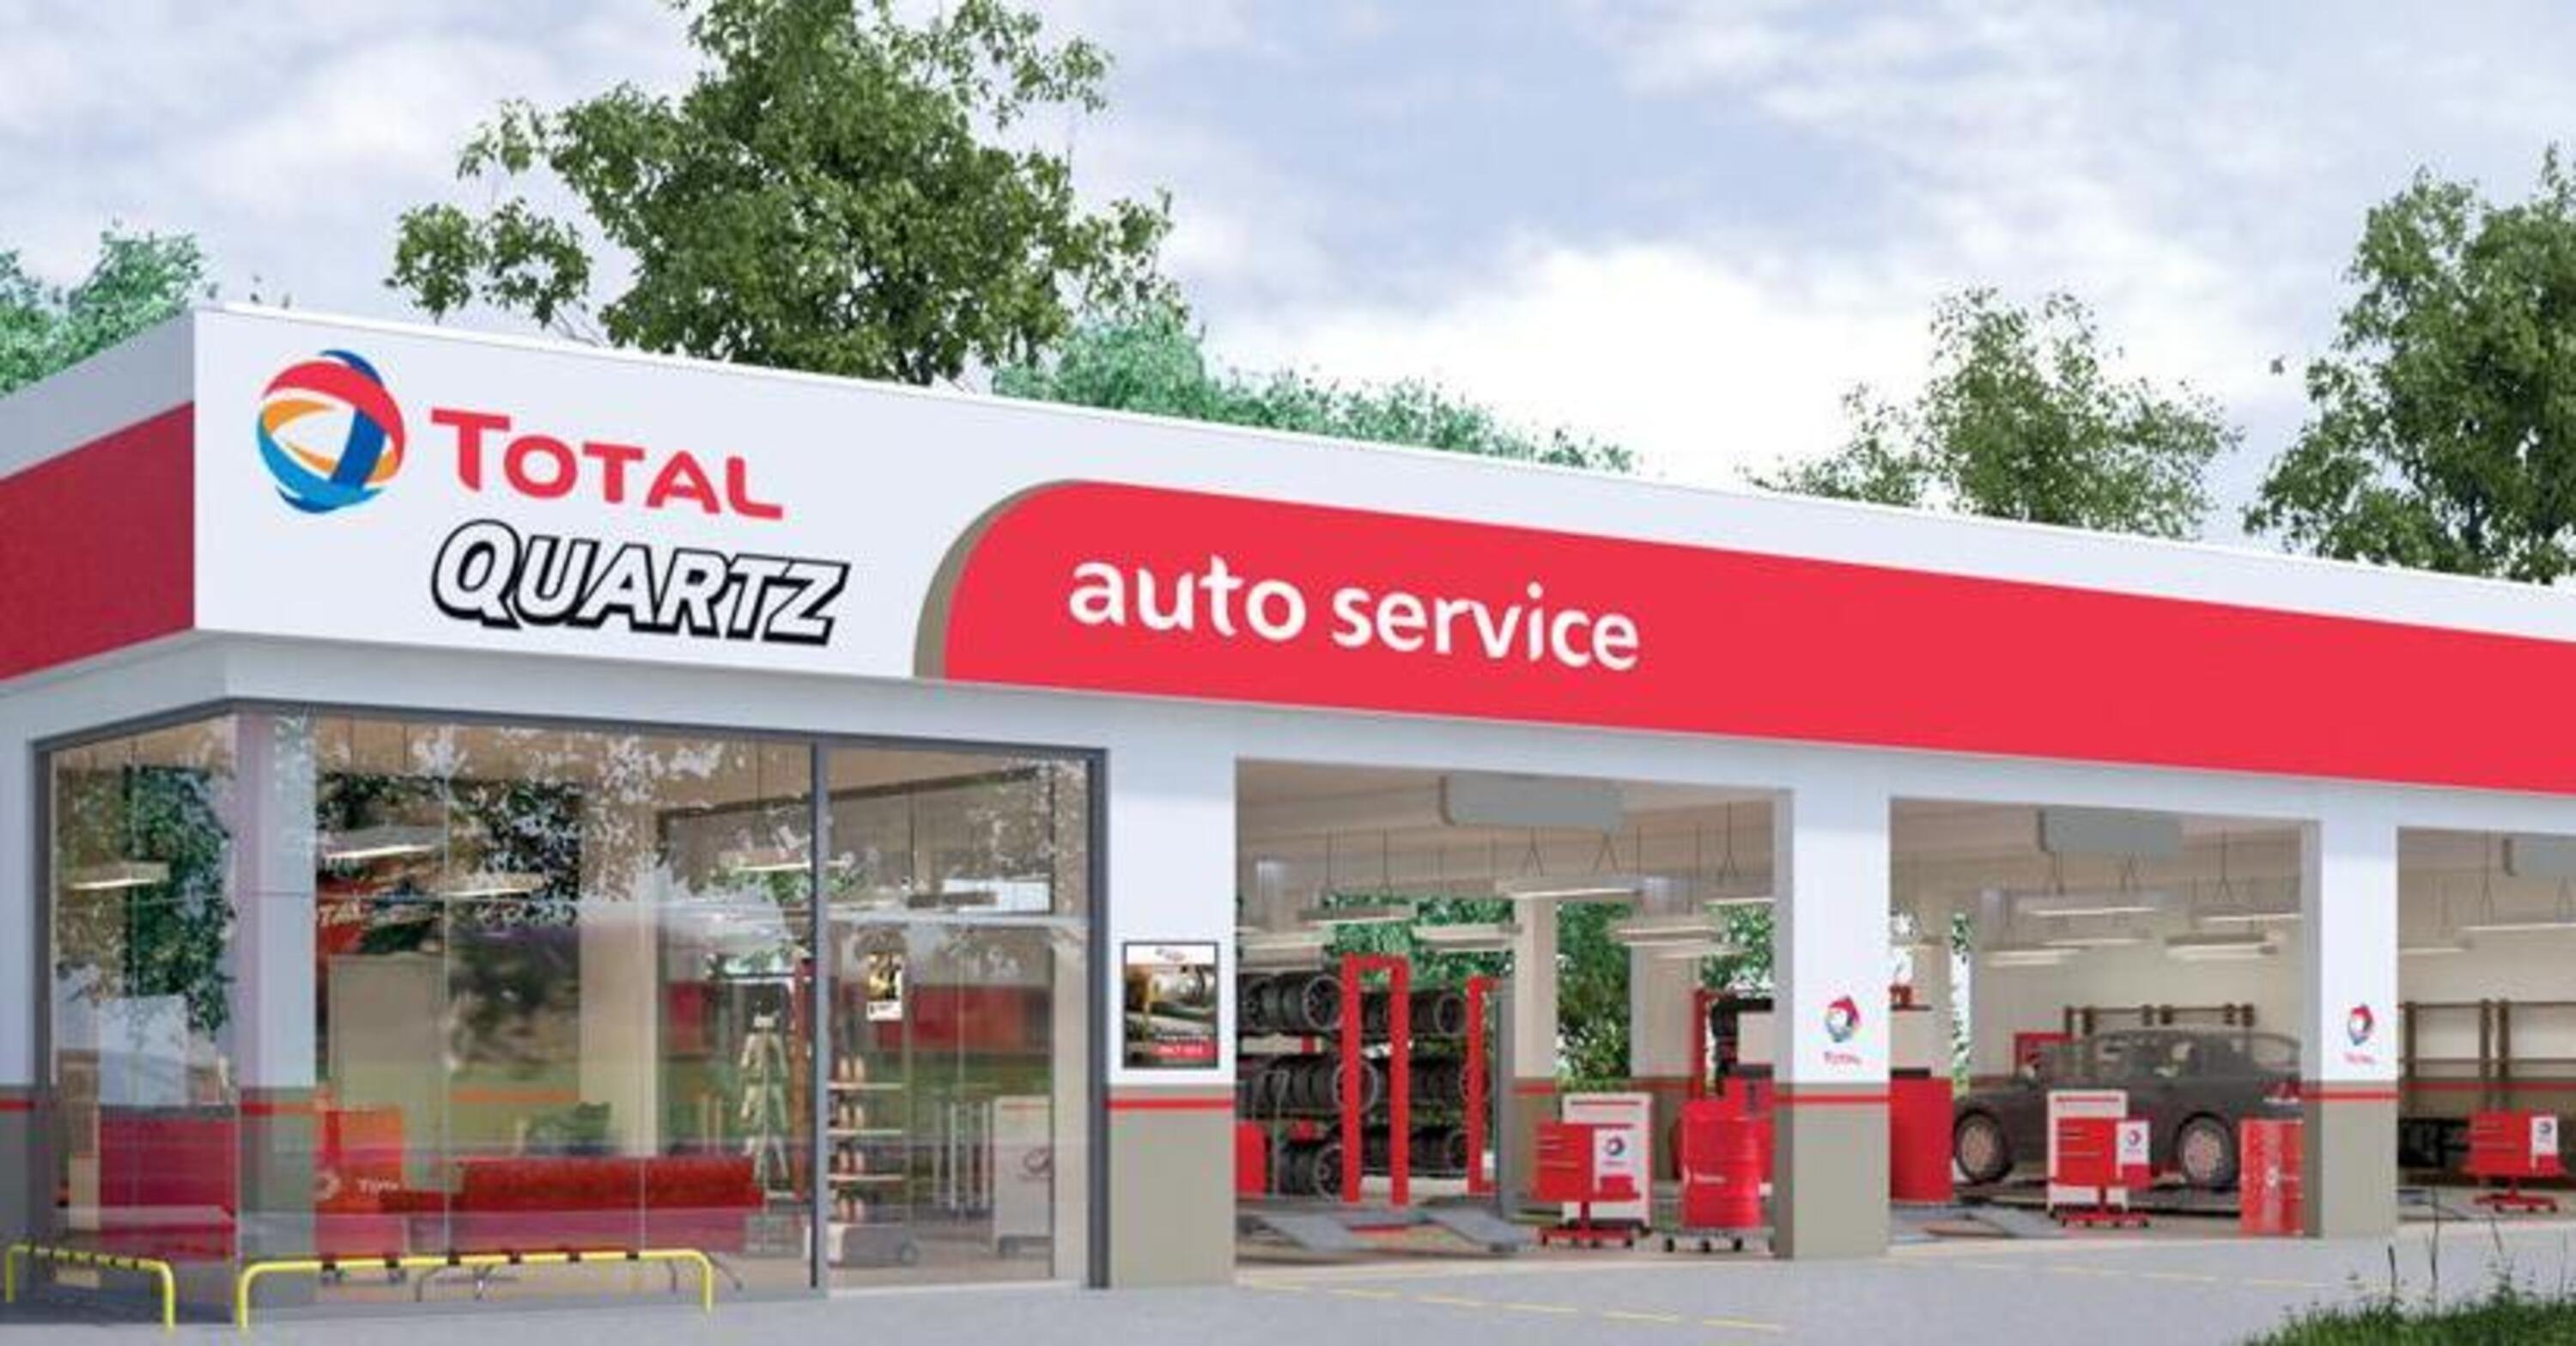 Autofficine specializzate: anche in Italia la nuova rete Total Quartz Auto Service